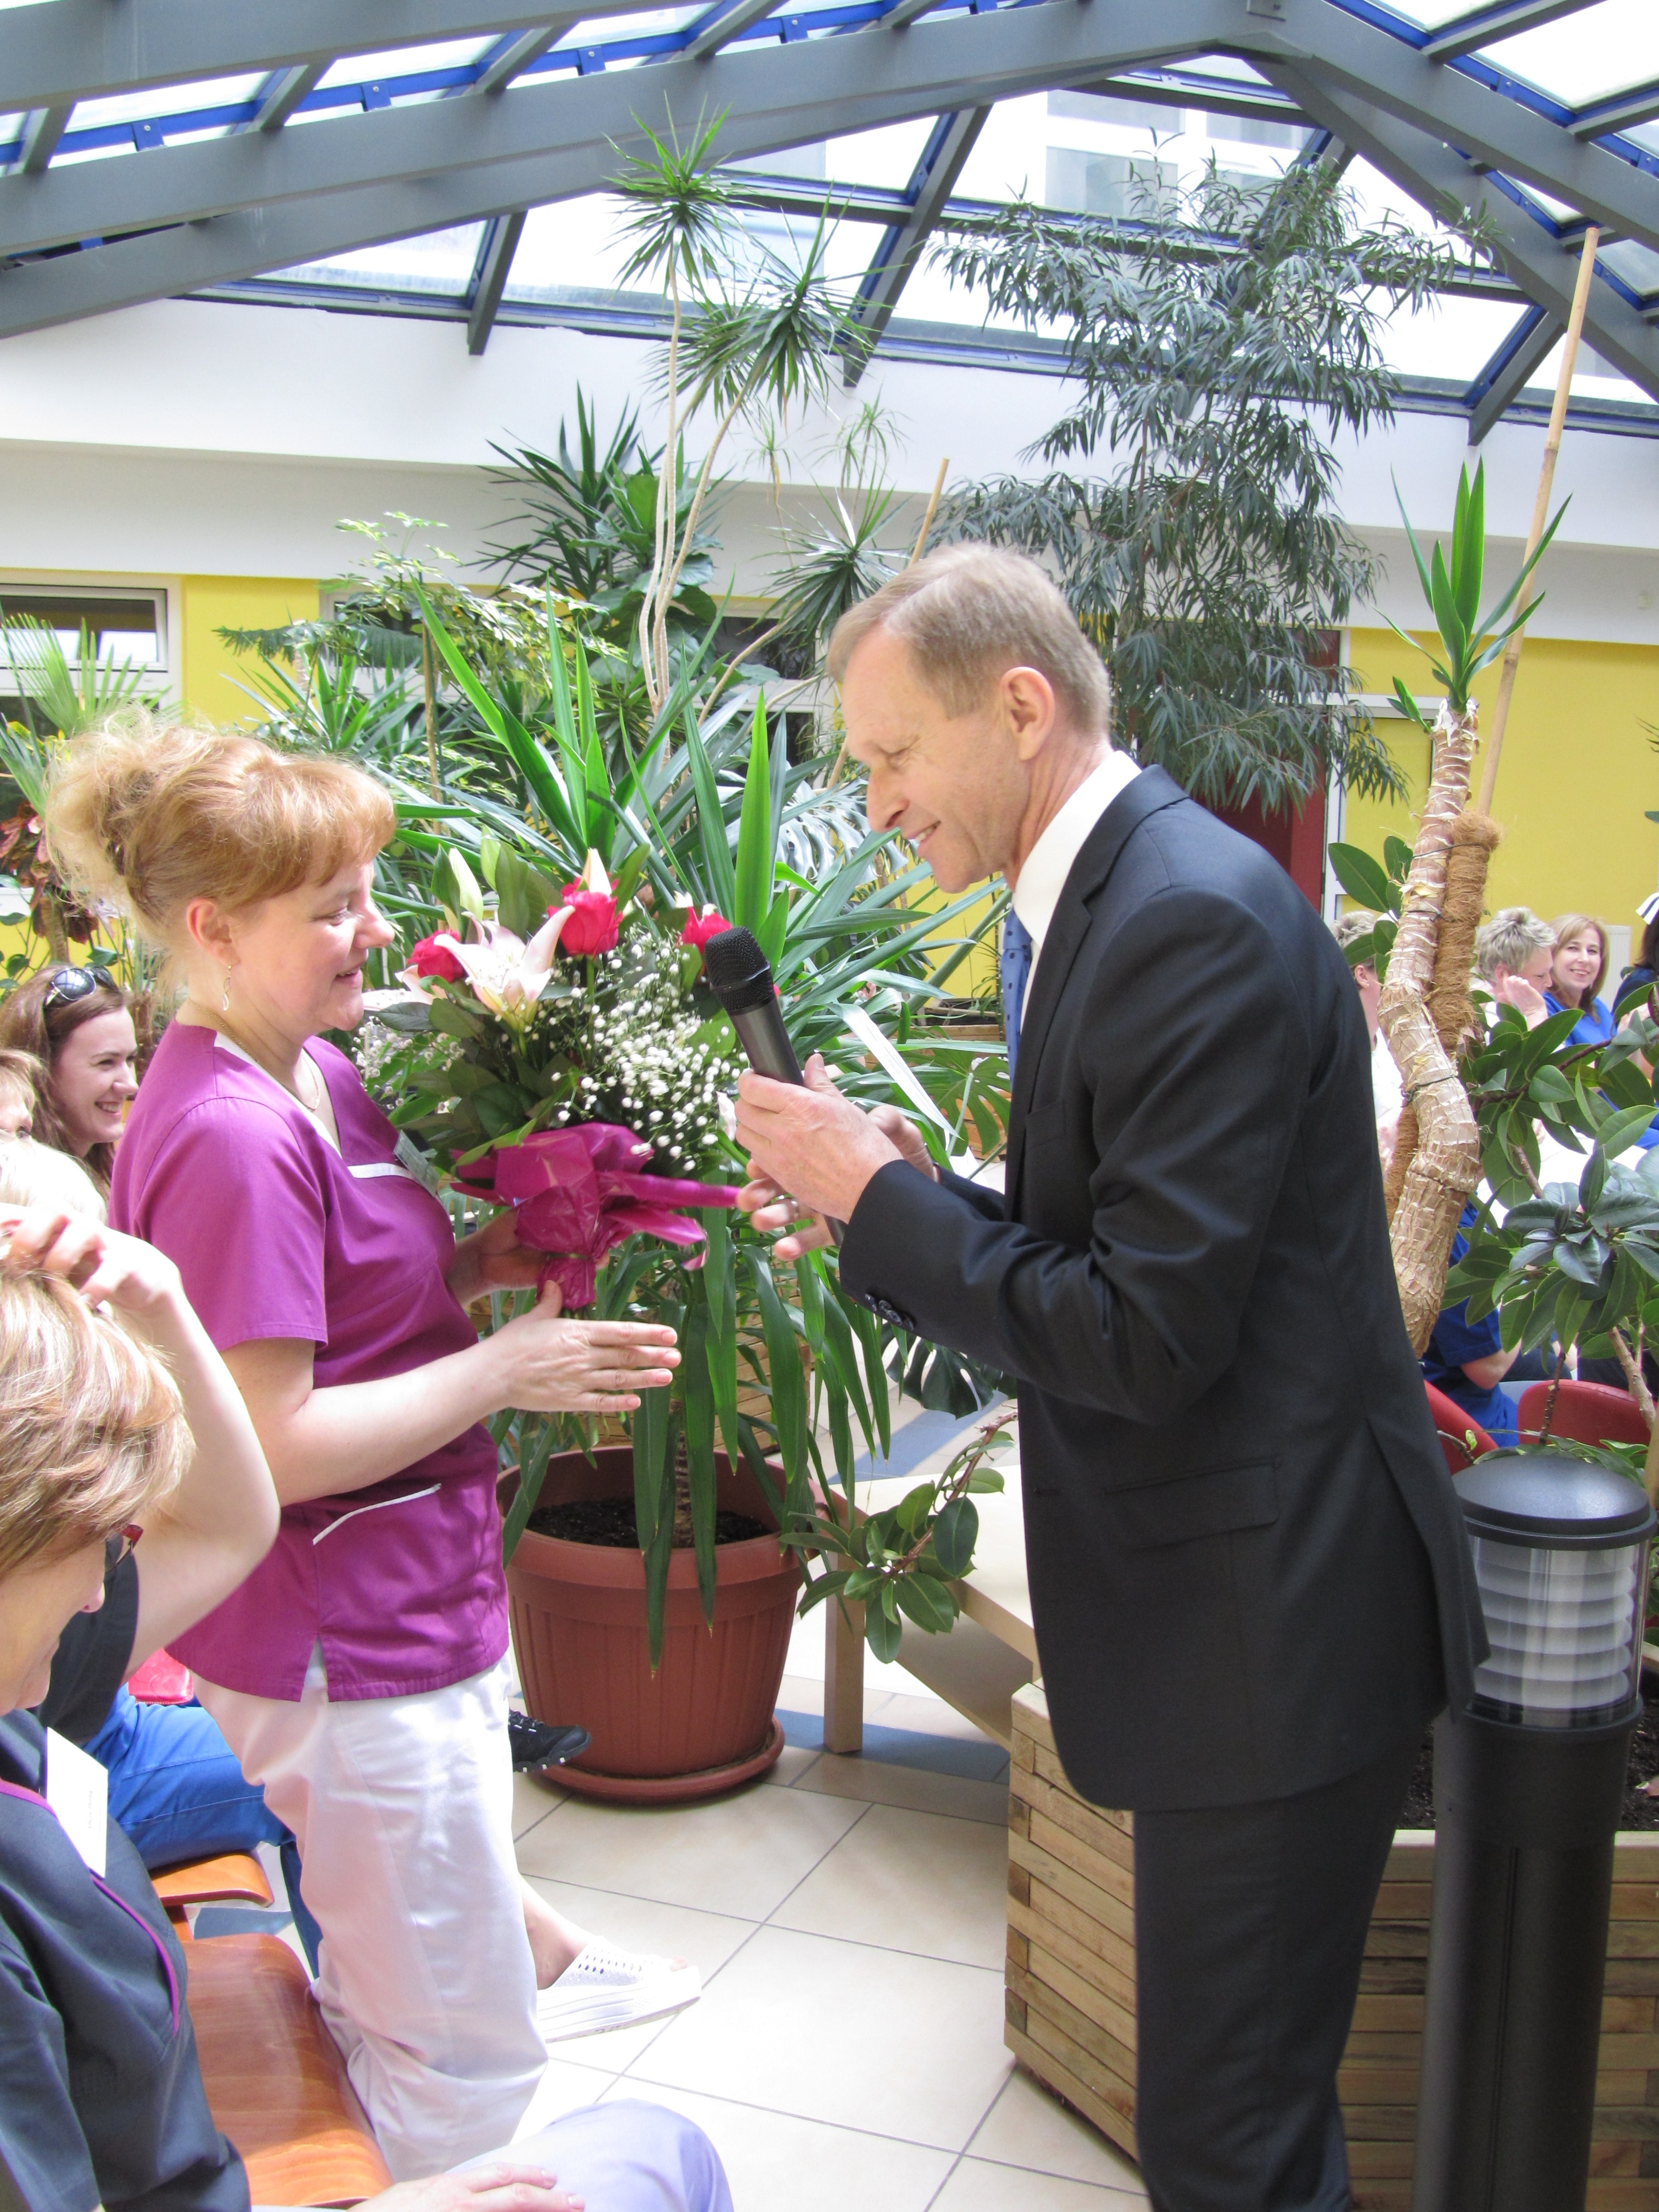 Pan Dyrektor wręcza kwiaty dla pielęgniarek